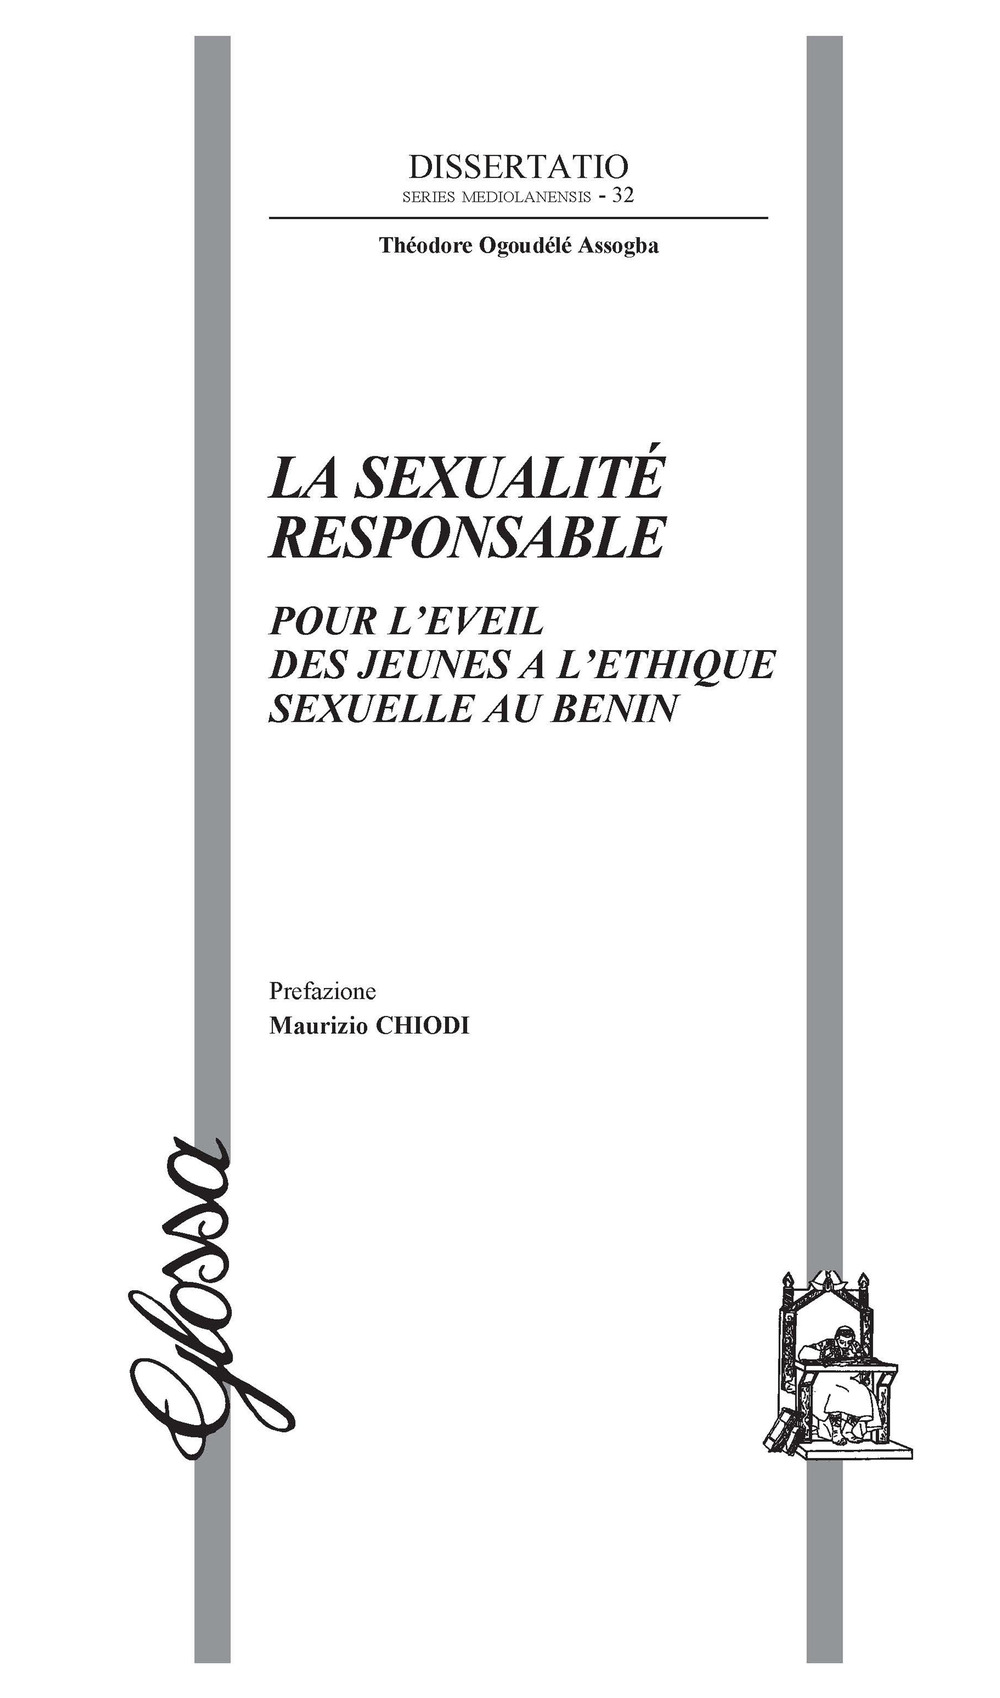 La sexualité responsable. Pour l'eveil des jeunes a l'ethique sexuelle au Benin